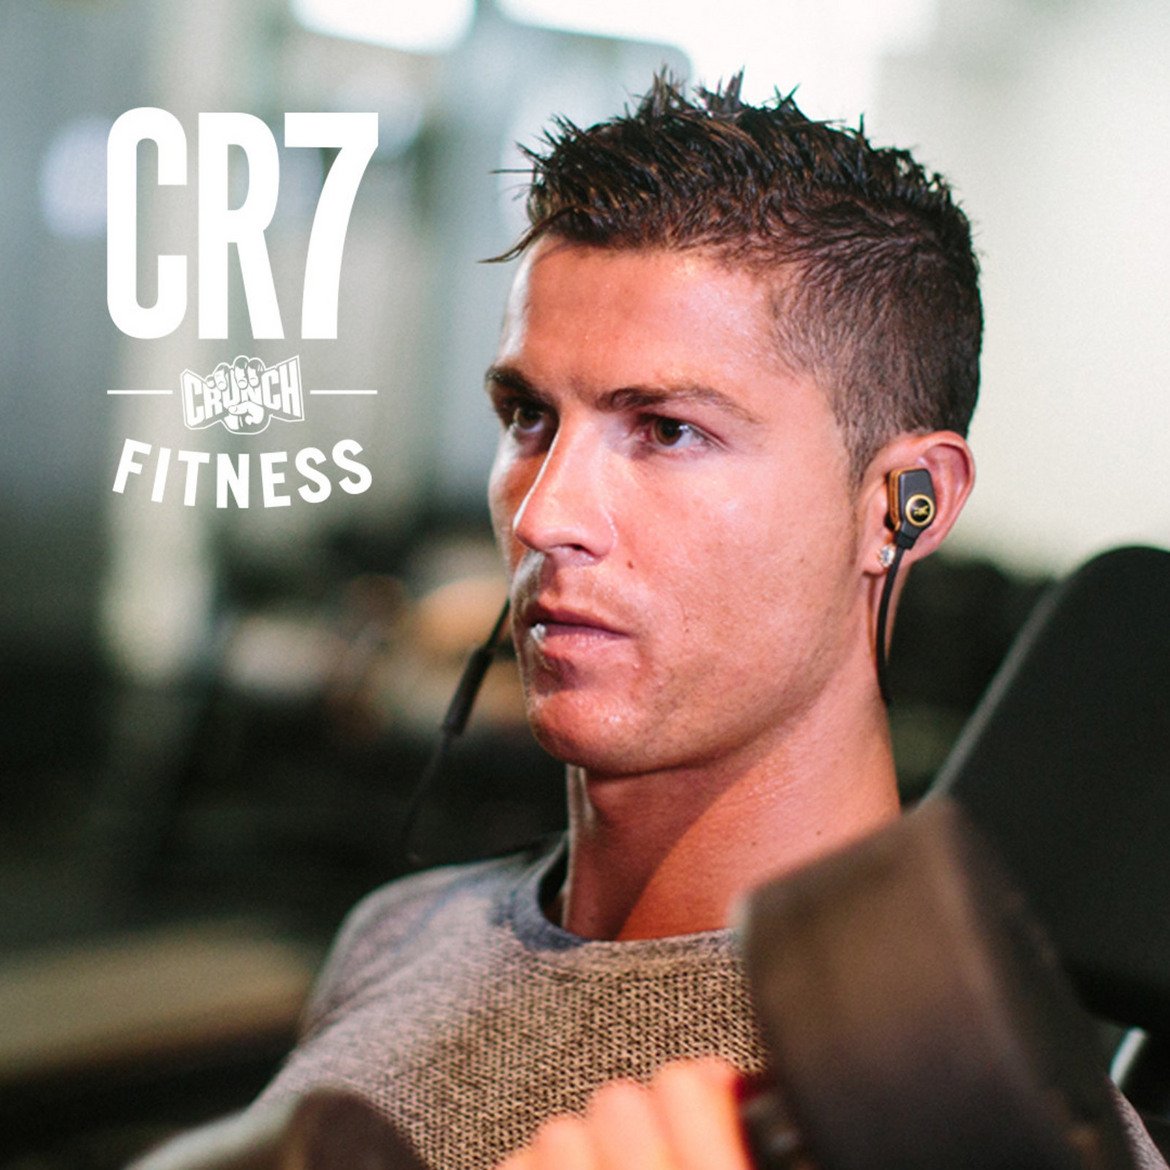 Роналдо във фитнеса
... Отидете във фитнеса на Кристиано. Португалецът сключи договор с Crunch Fitness, за да стартира собствена верига фитнес салони брандирани с марката CR7.
